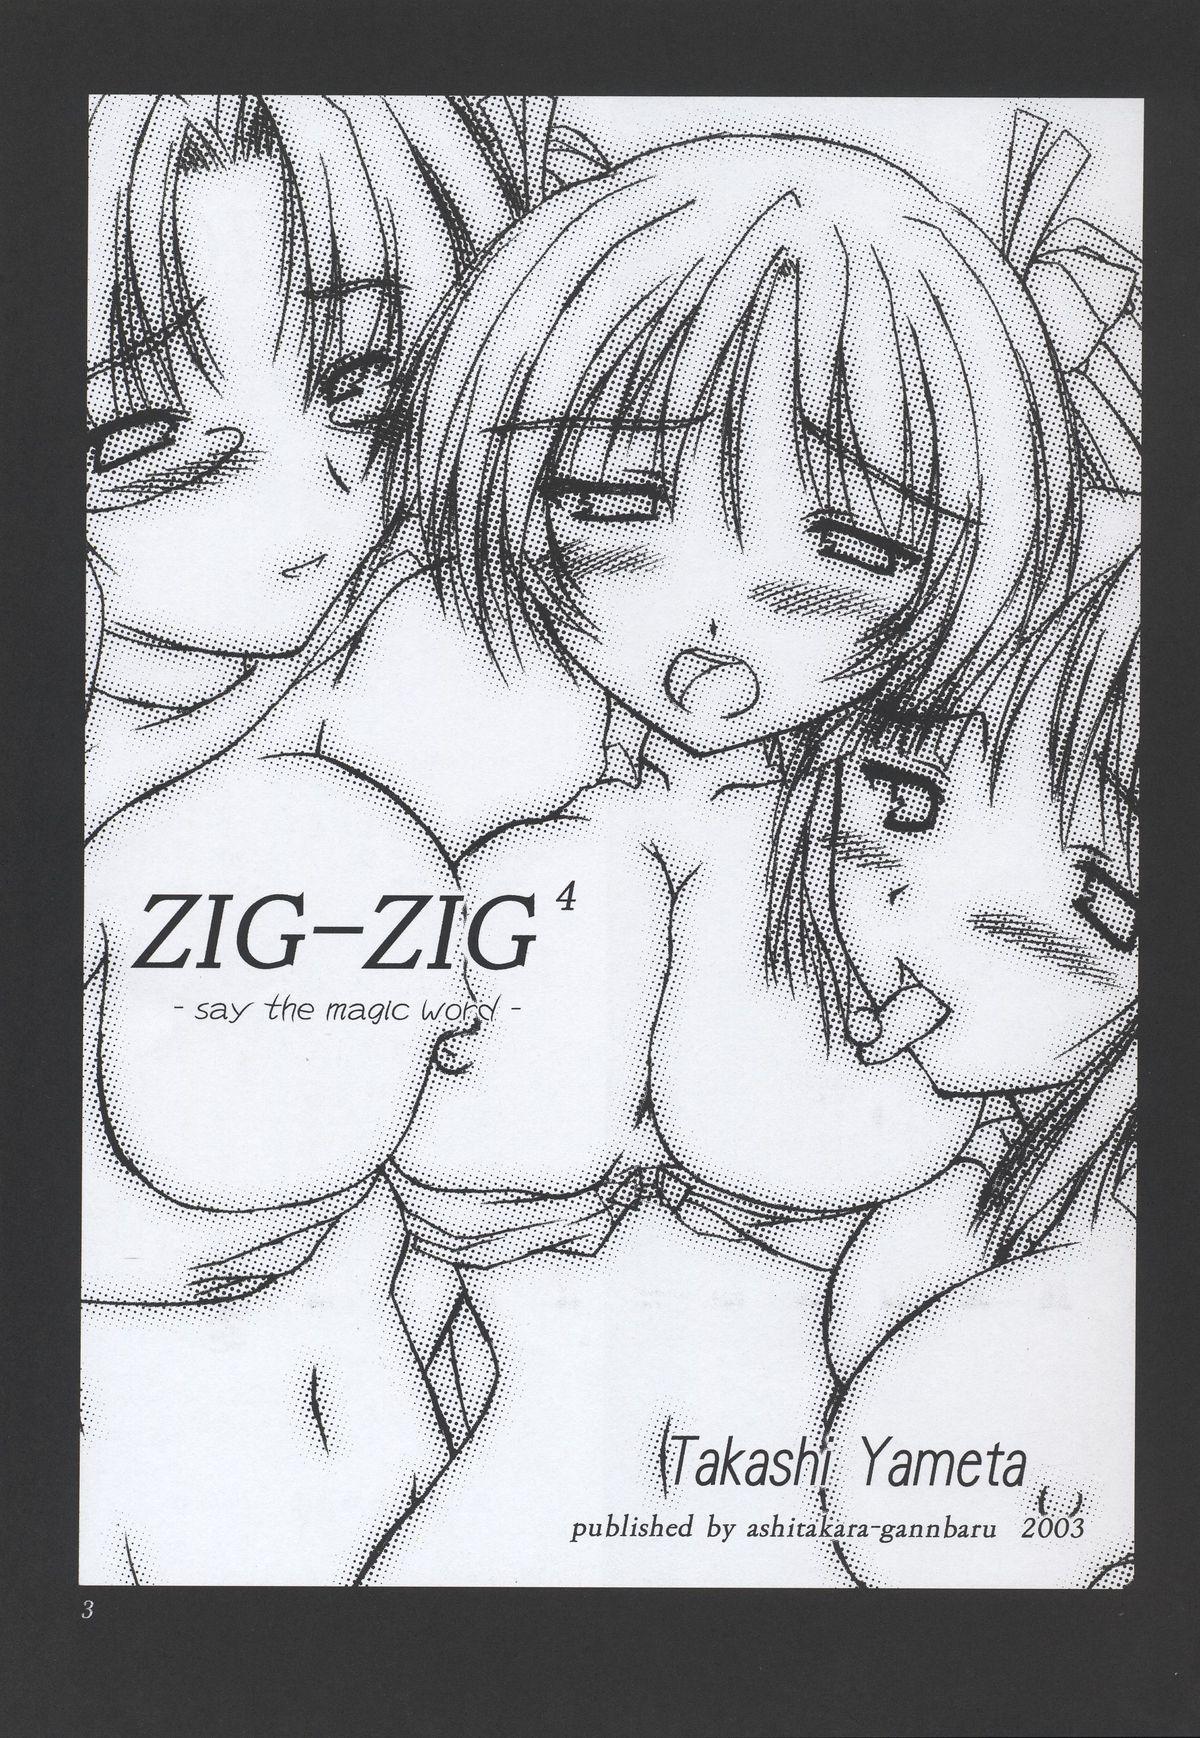 Chaturbate (C64) [ashitakara-ganbaru (Yameta Takashi)] ZIG-ZIG 4 -say the magic word- (Mahou Sensei Negima!) - Mahou sensei negima Cheating Wife - Page 2